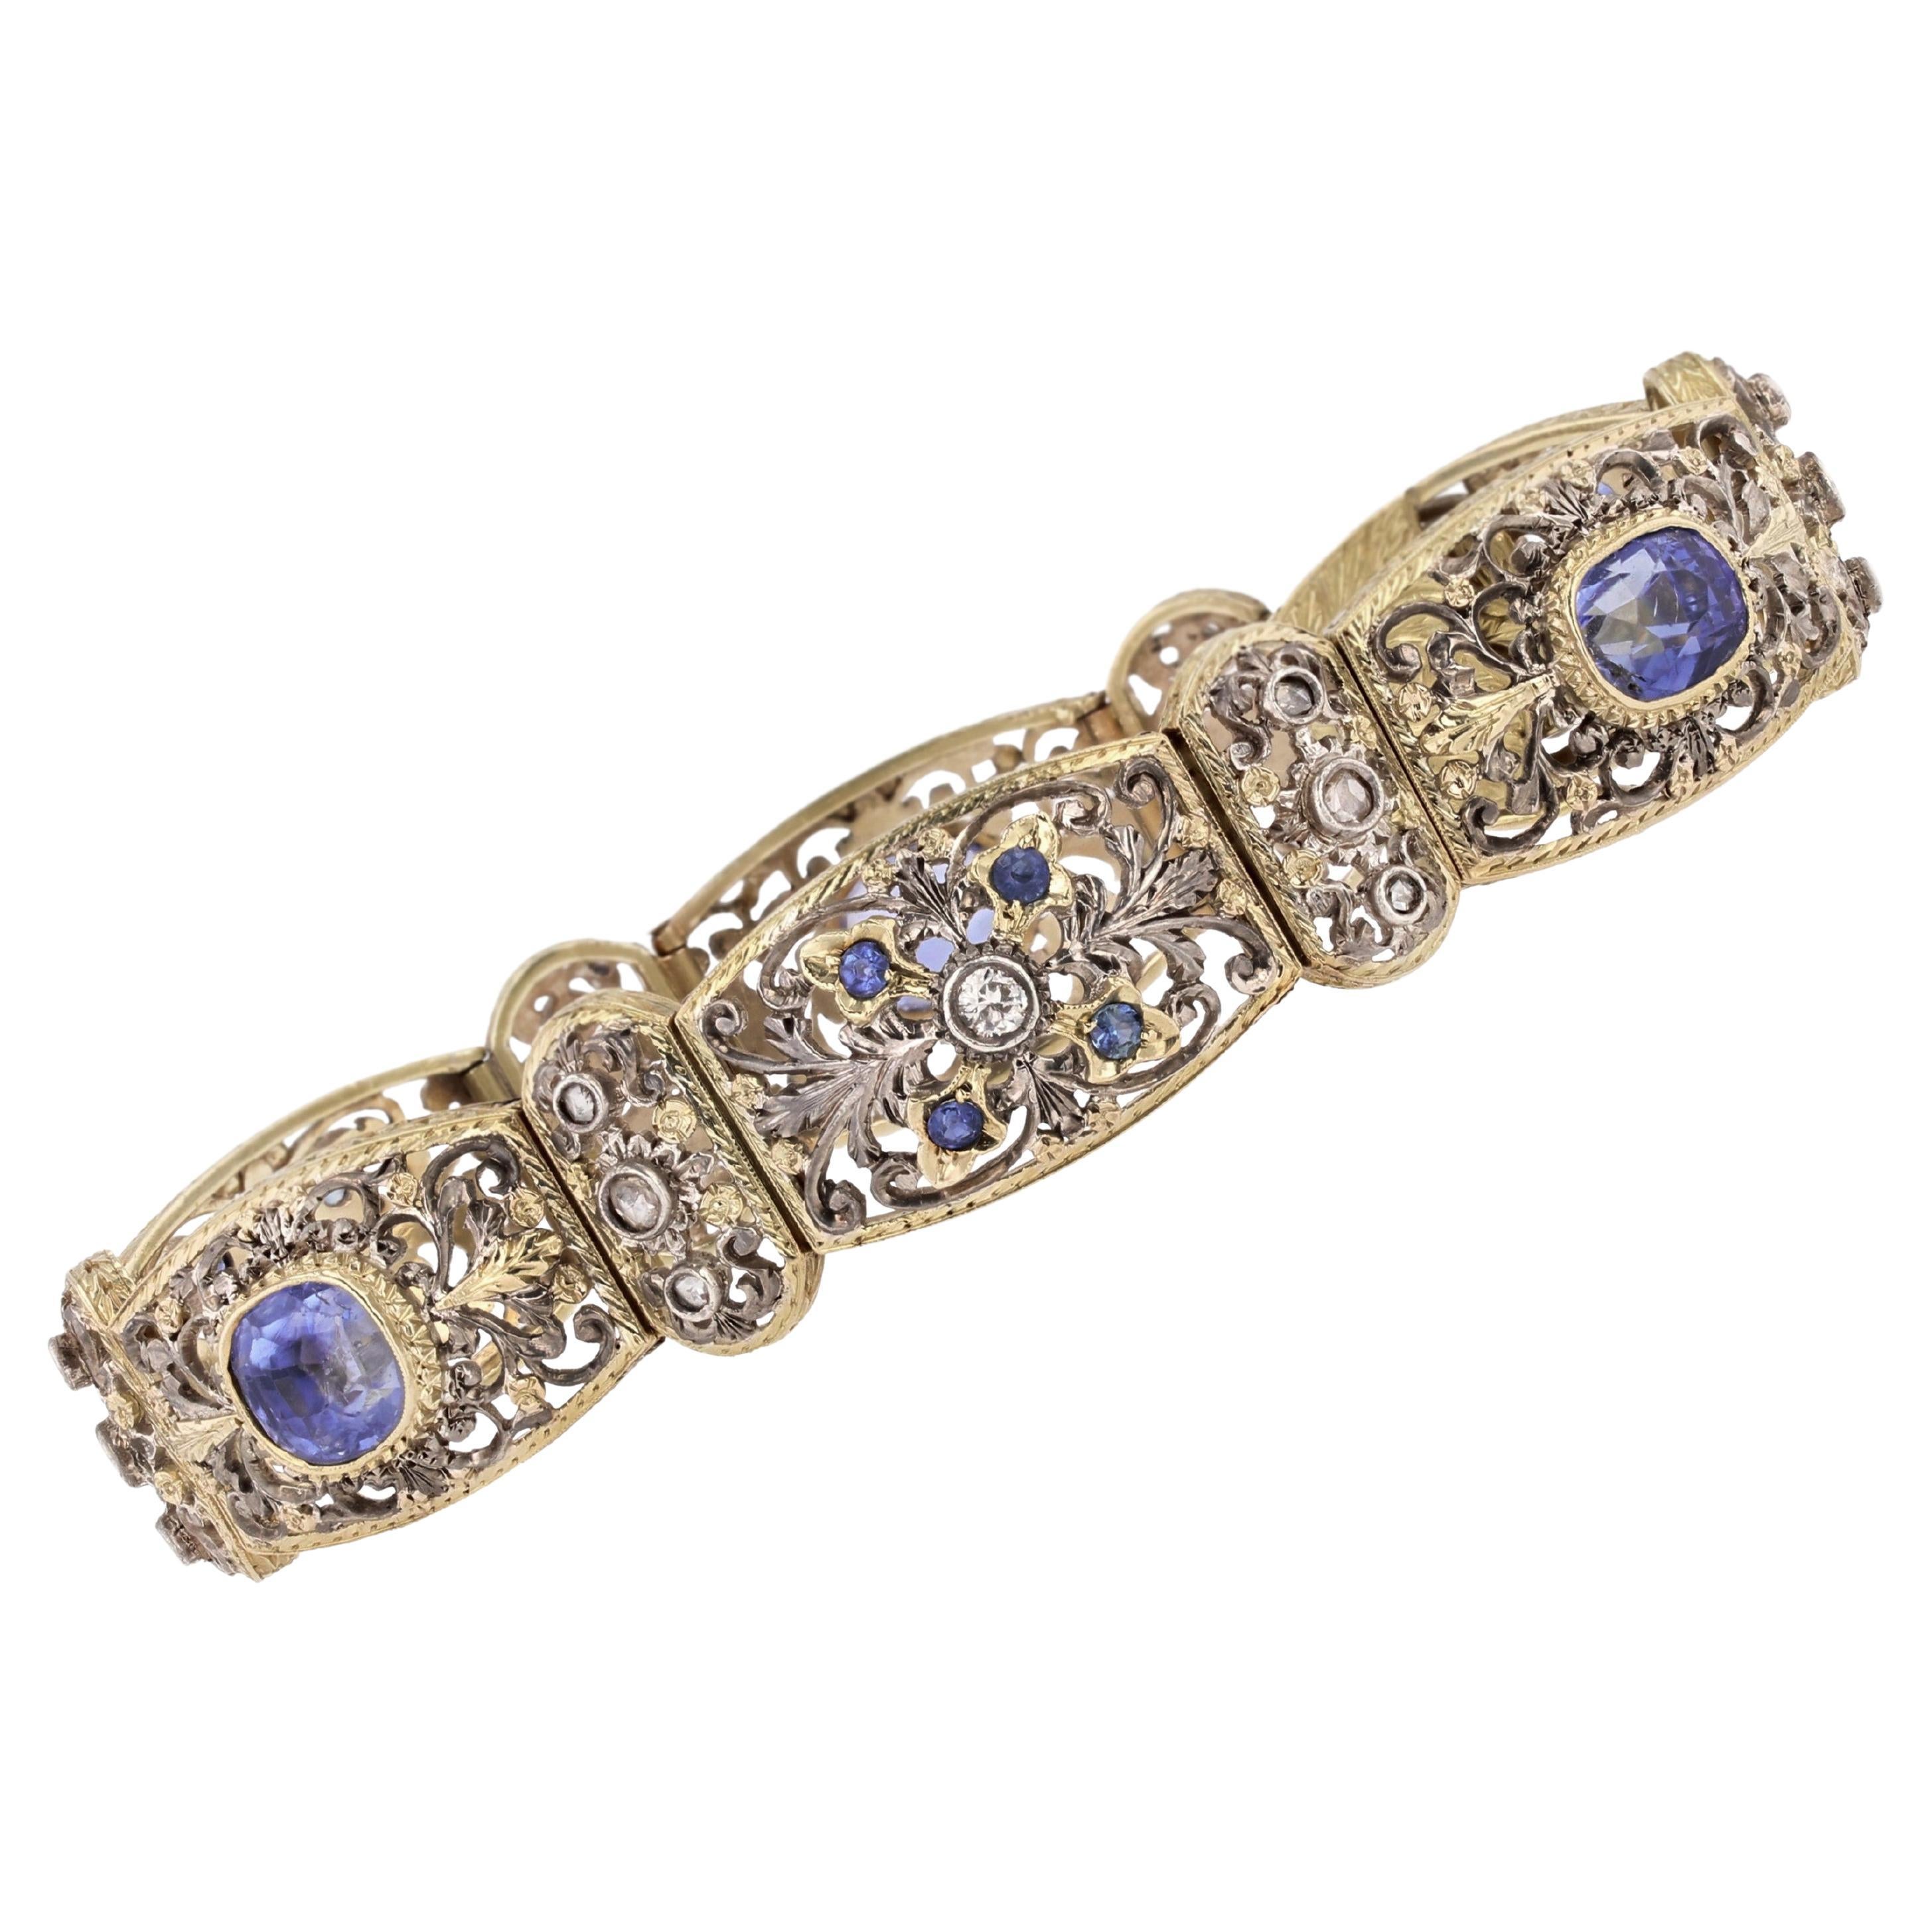 Bracelet en or jaune 18 carats avec saphirs de Ceylan naturels et diamants, années 1930